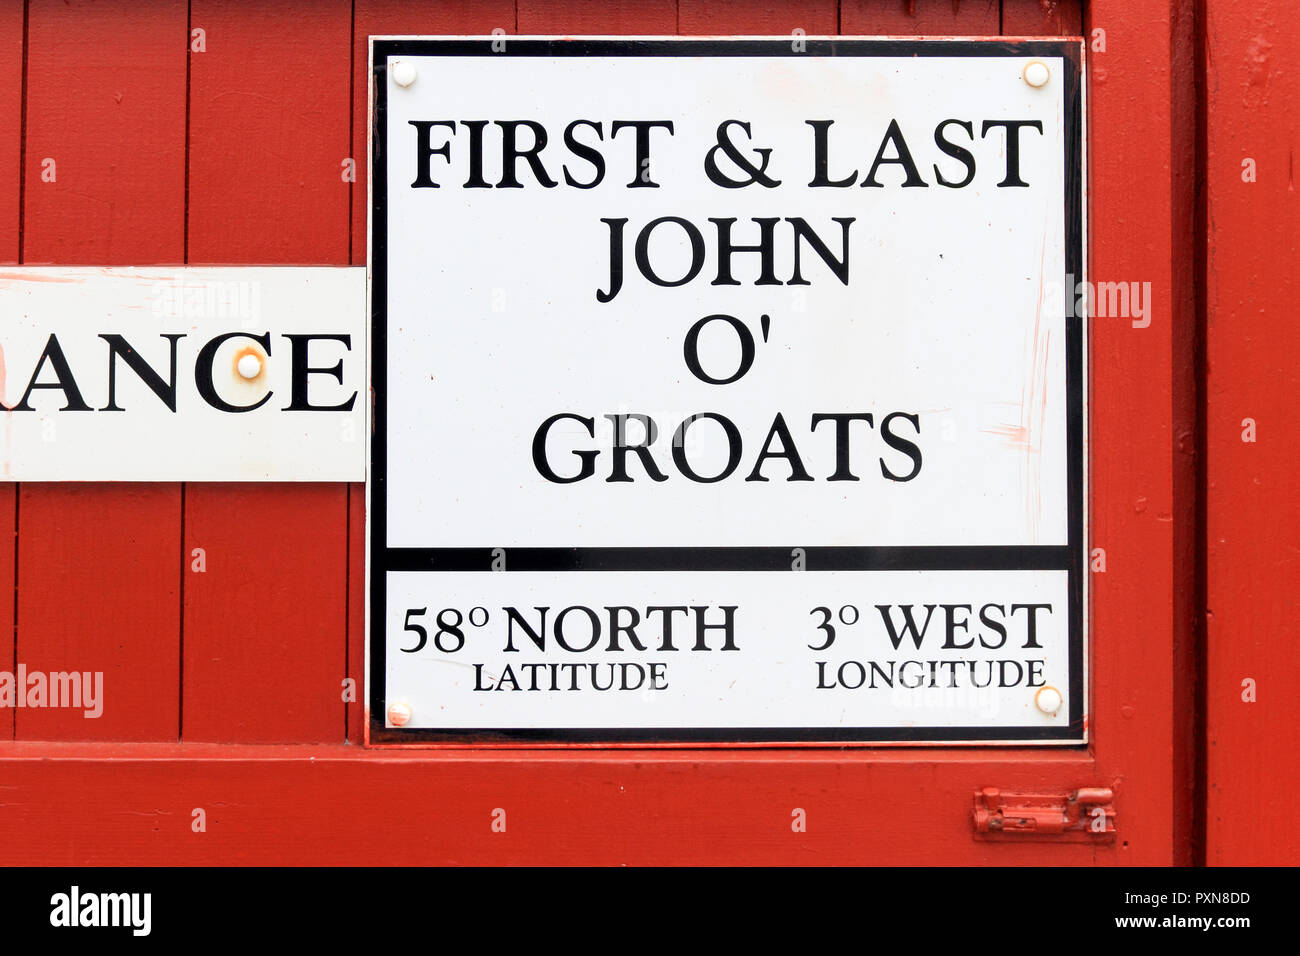 John O' Groats, Scottish Highlands, Scotland, UK Stock Photo